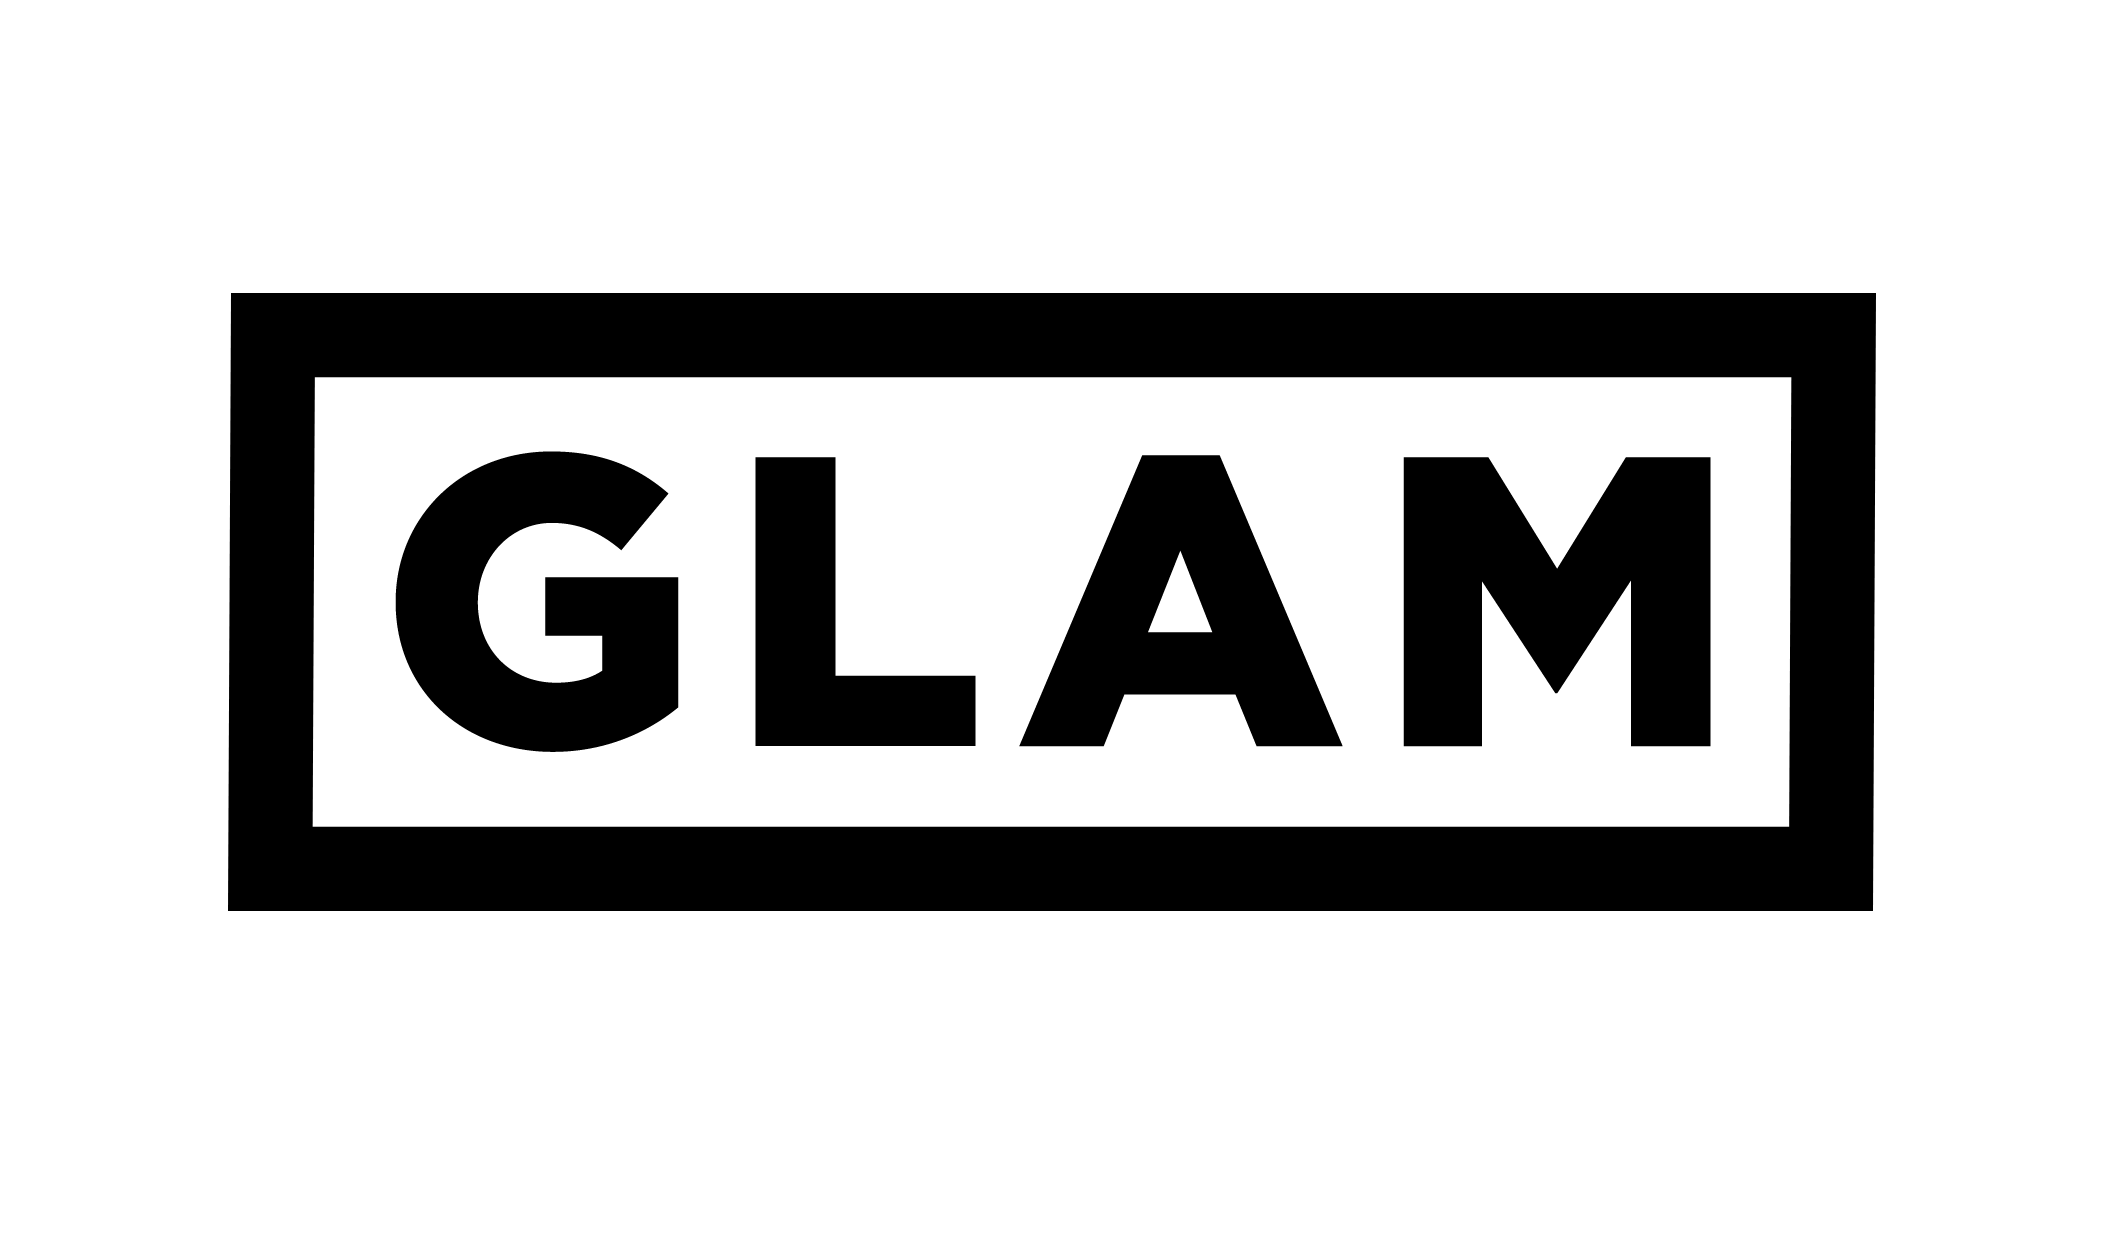 Glam Logo - File:GLAM logo.png